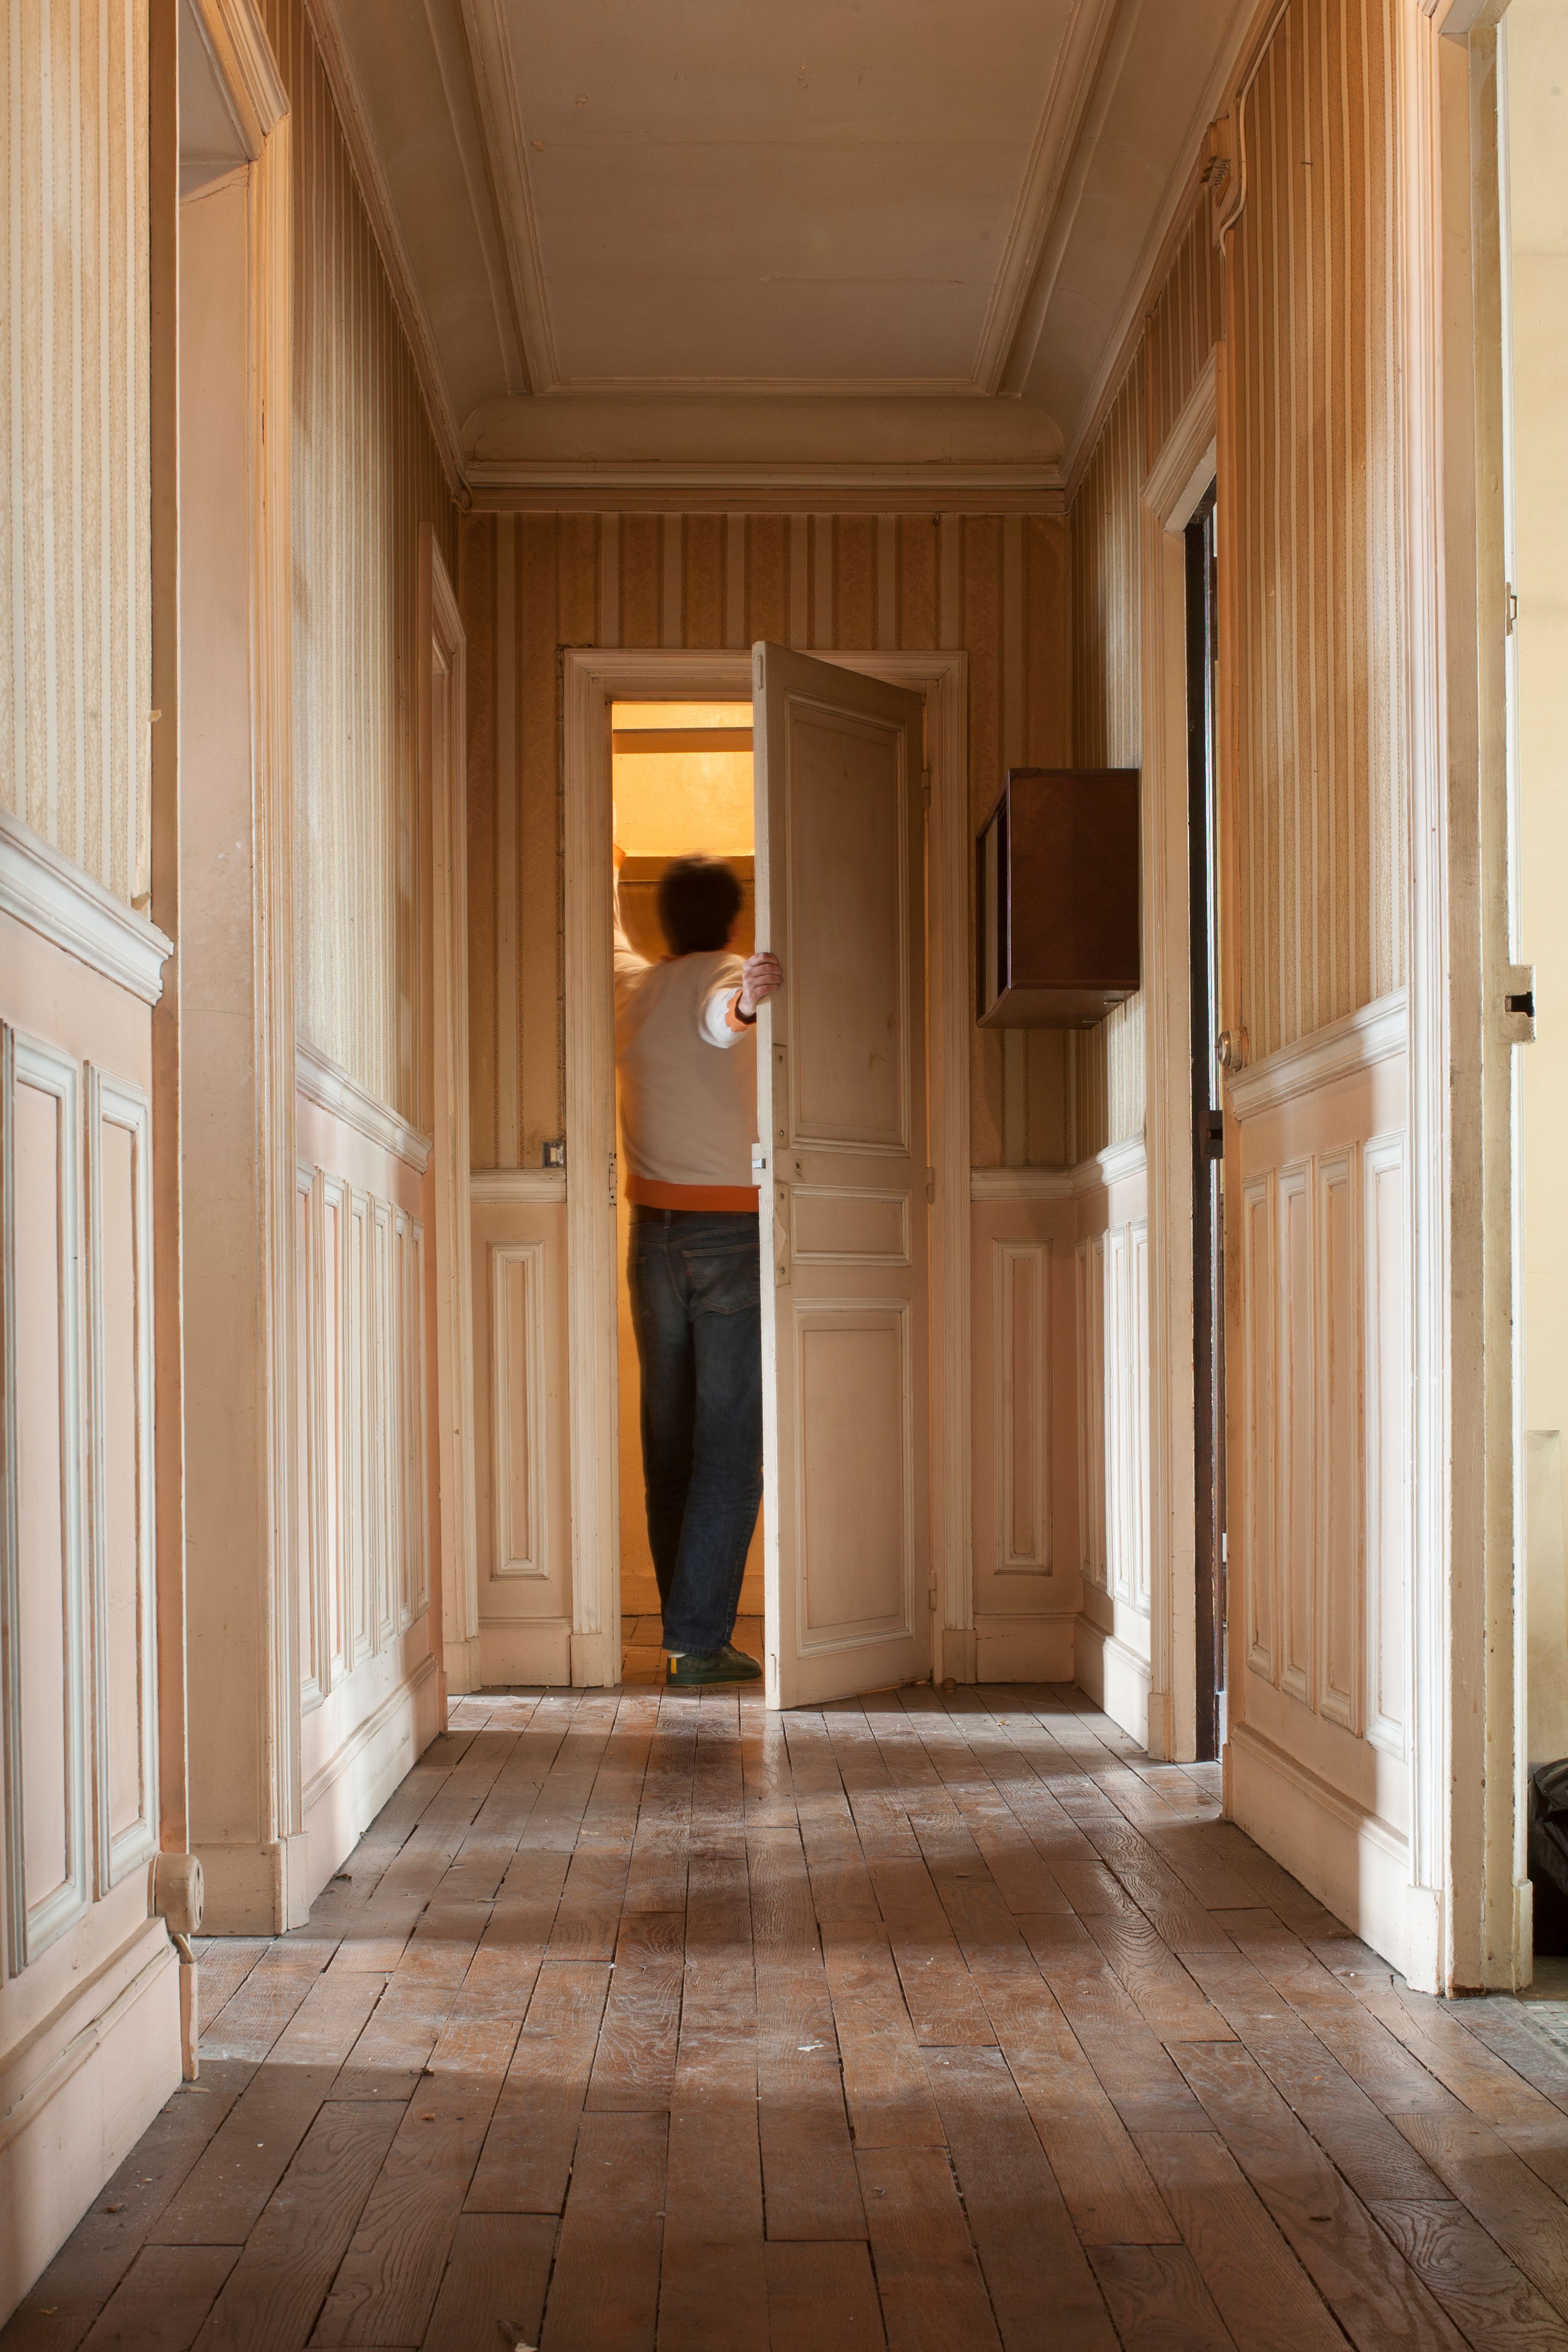 Un homme ouvre une porte au bout d'un couloir. | Source : Getty Images